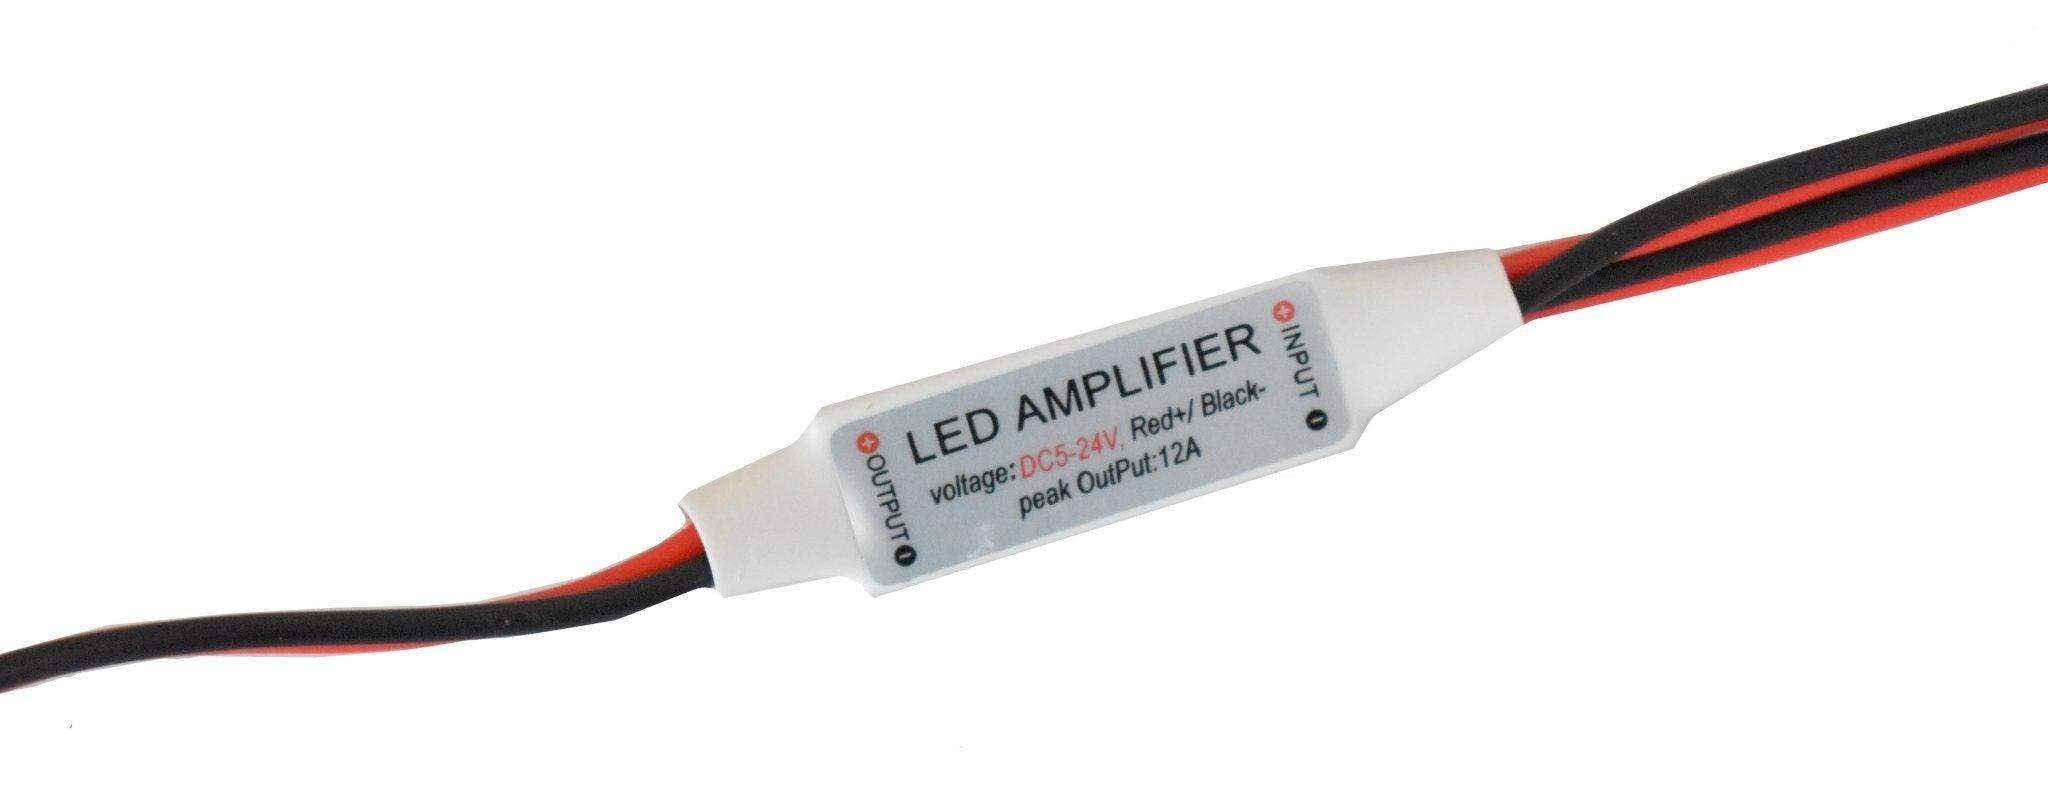 Amplificador Para Tira Led 1 Color Sencillo a solo $ 8.00 Refaccion y puestos celulares, refurbish y microelectronica.- FixOEM